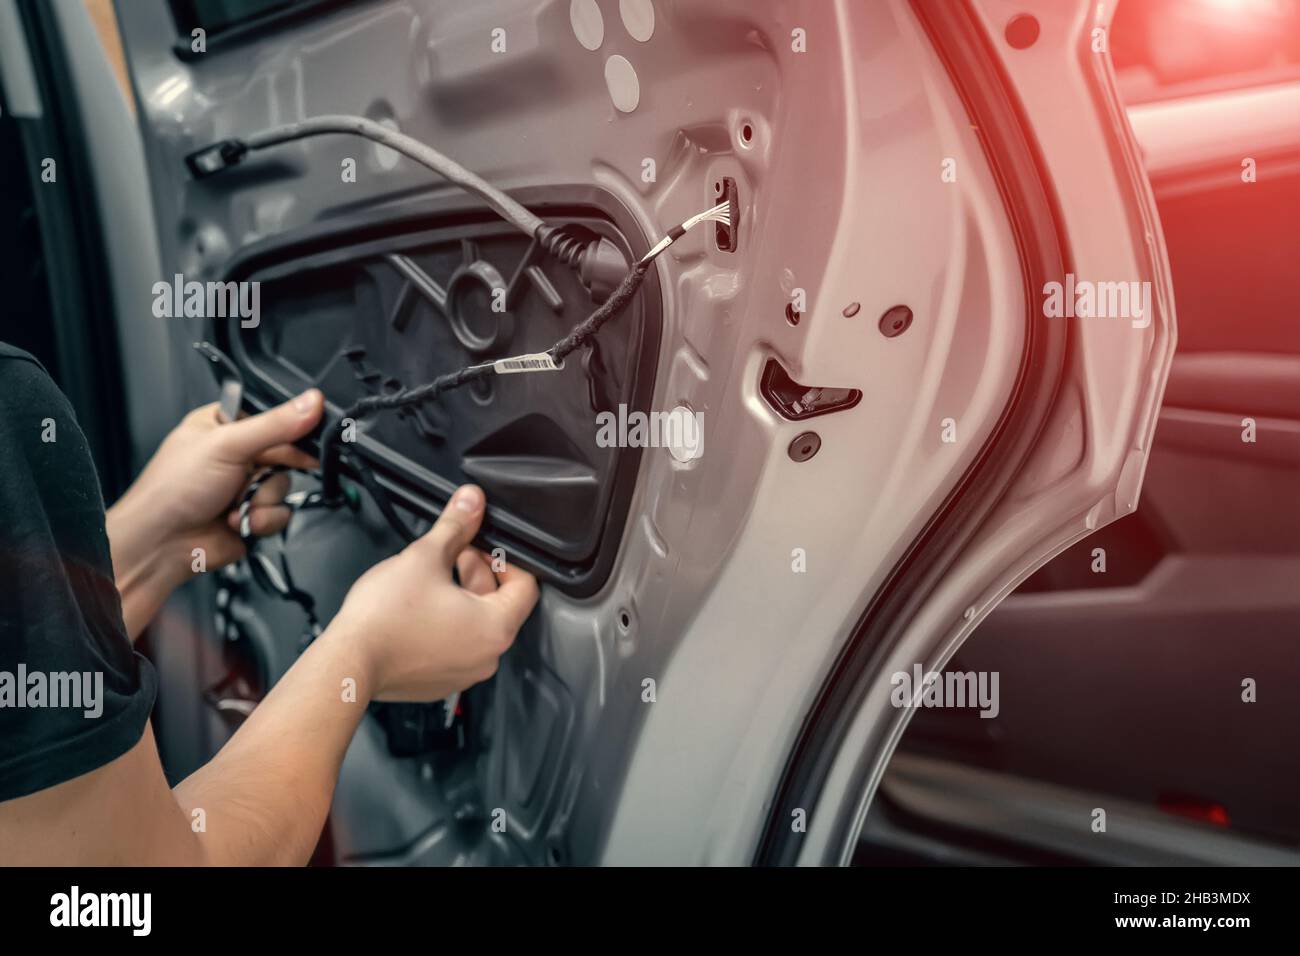 El trabajador del servicio de automóviles desmonta la puerta del coche para el cierre de la reparación. Foto de stock